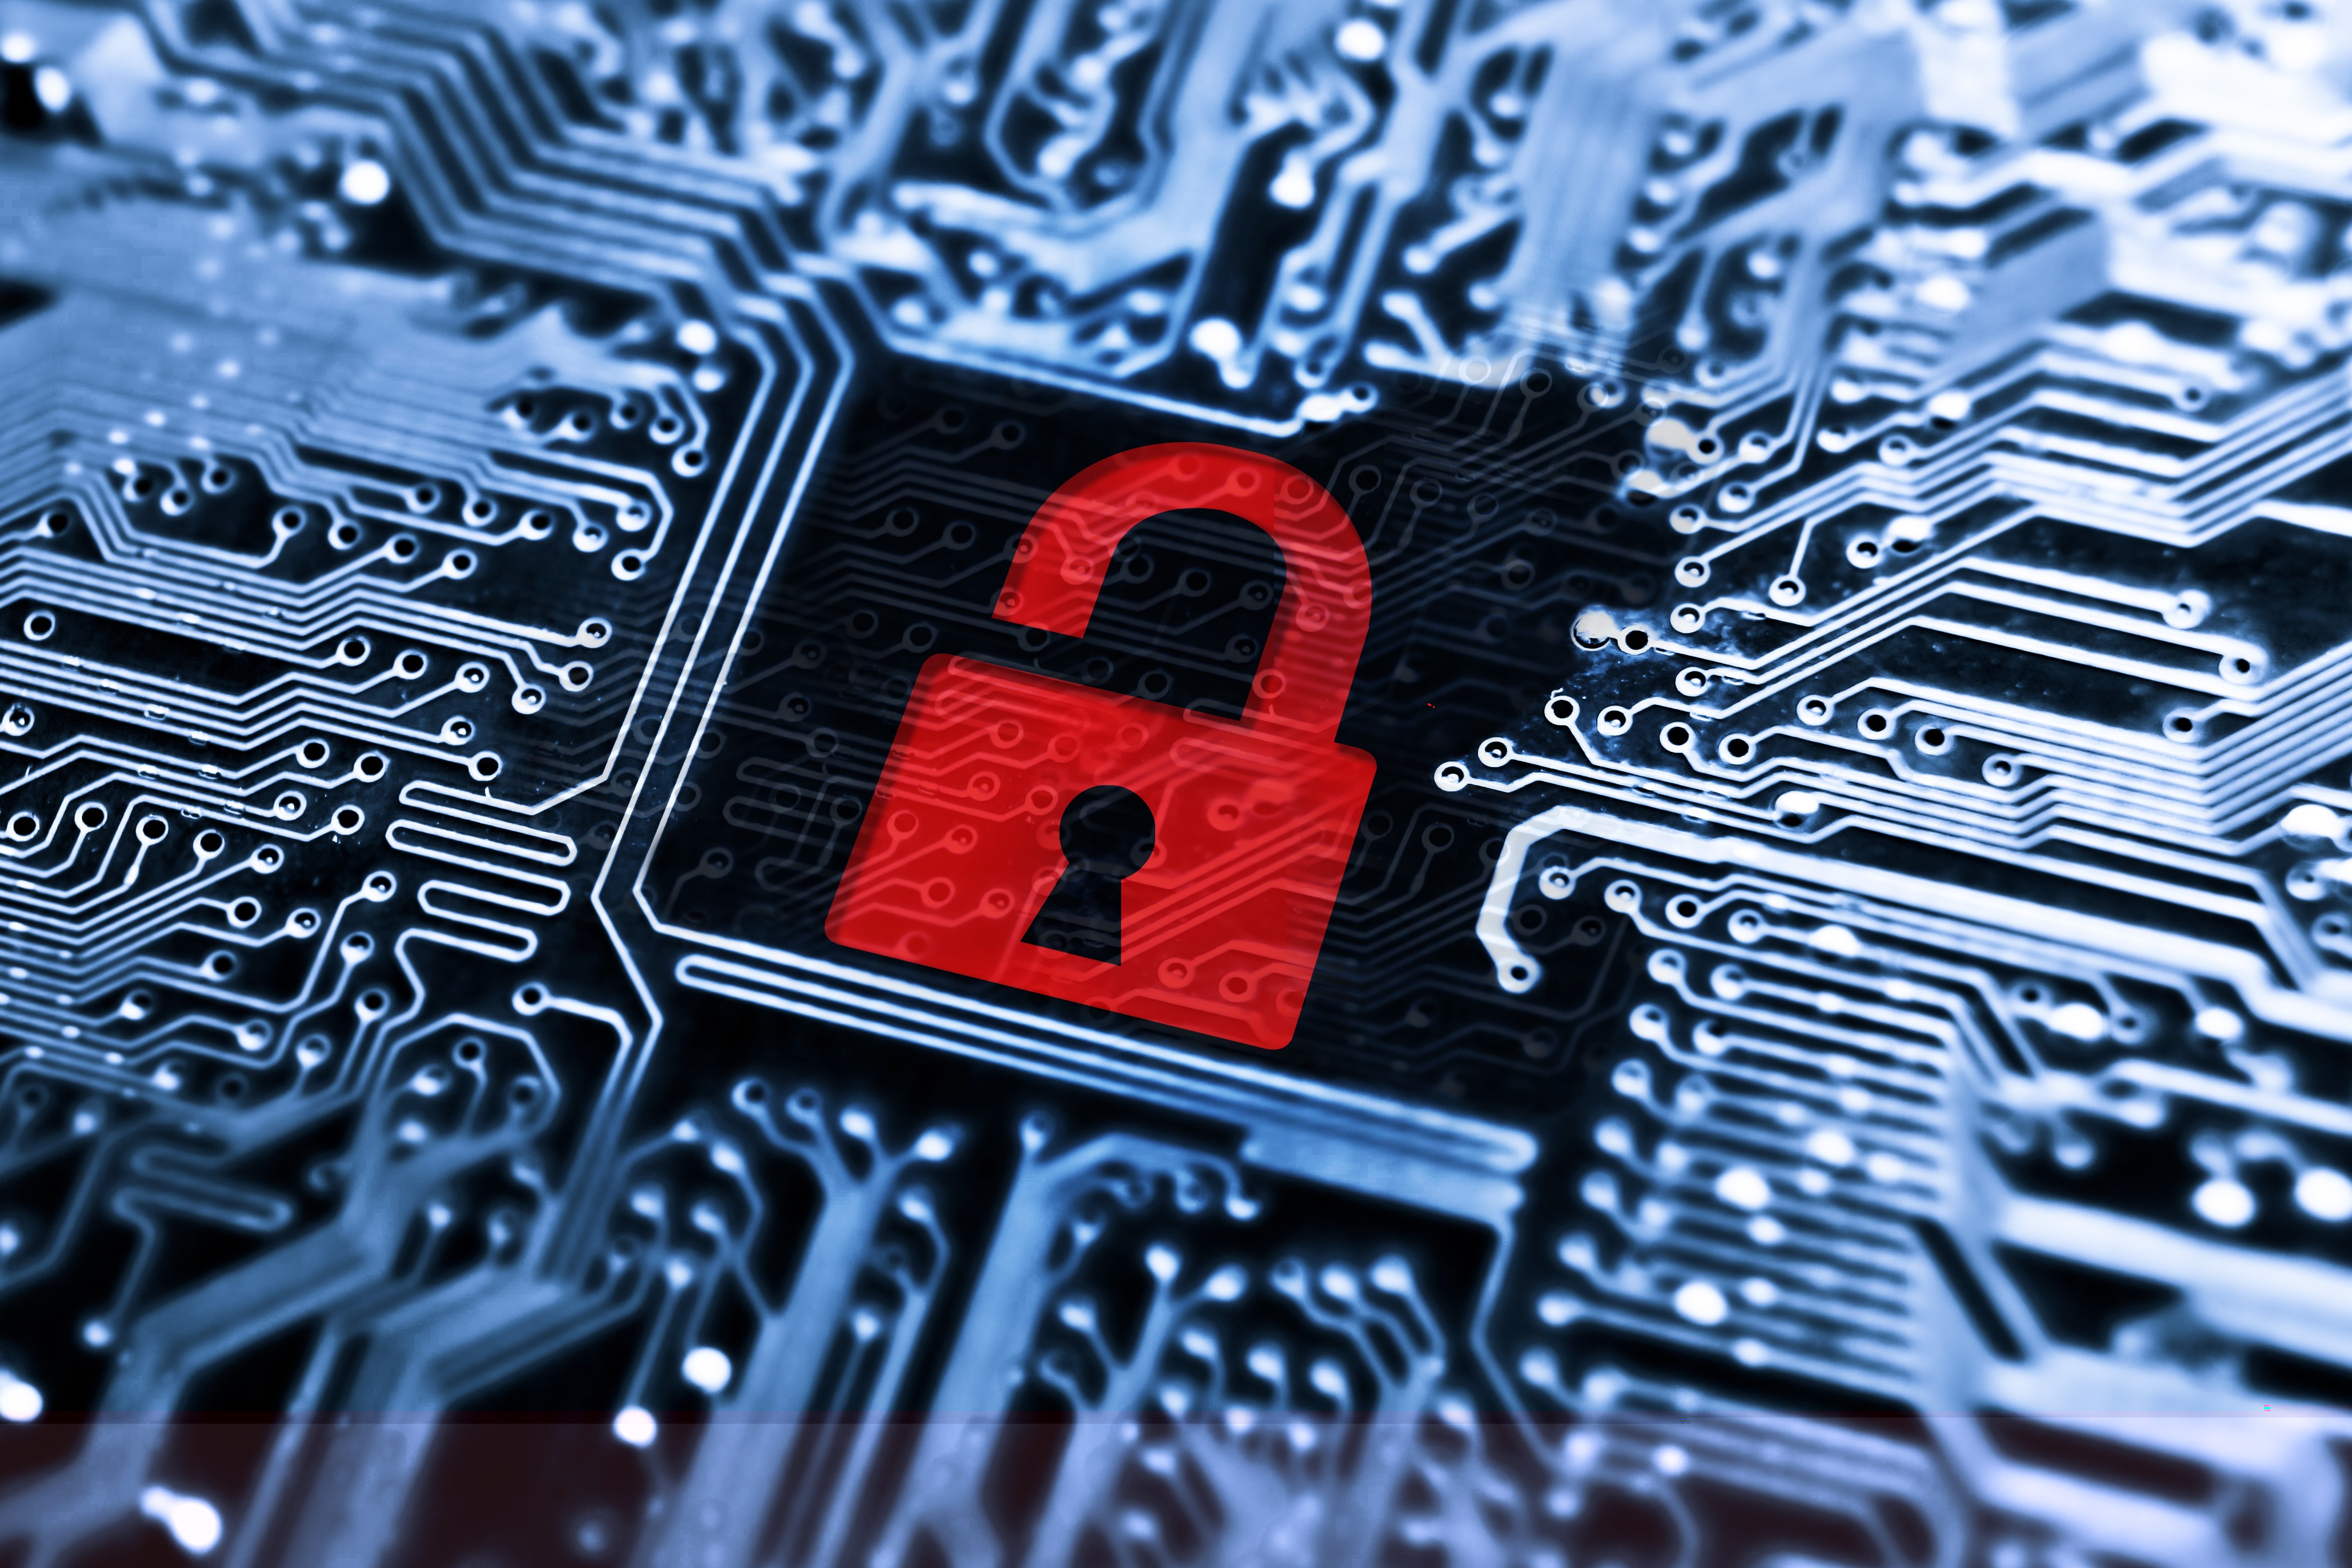 Nieuw onderzoek naar impact van encryptie op zaken in de strafrechtketen